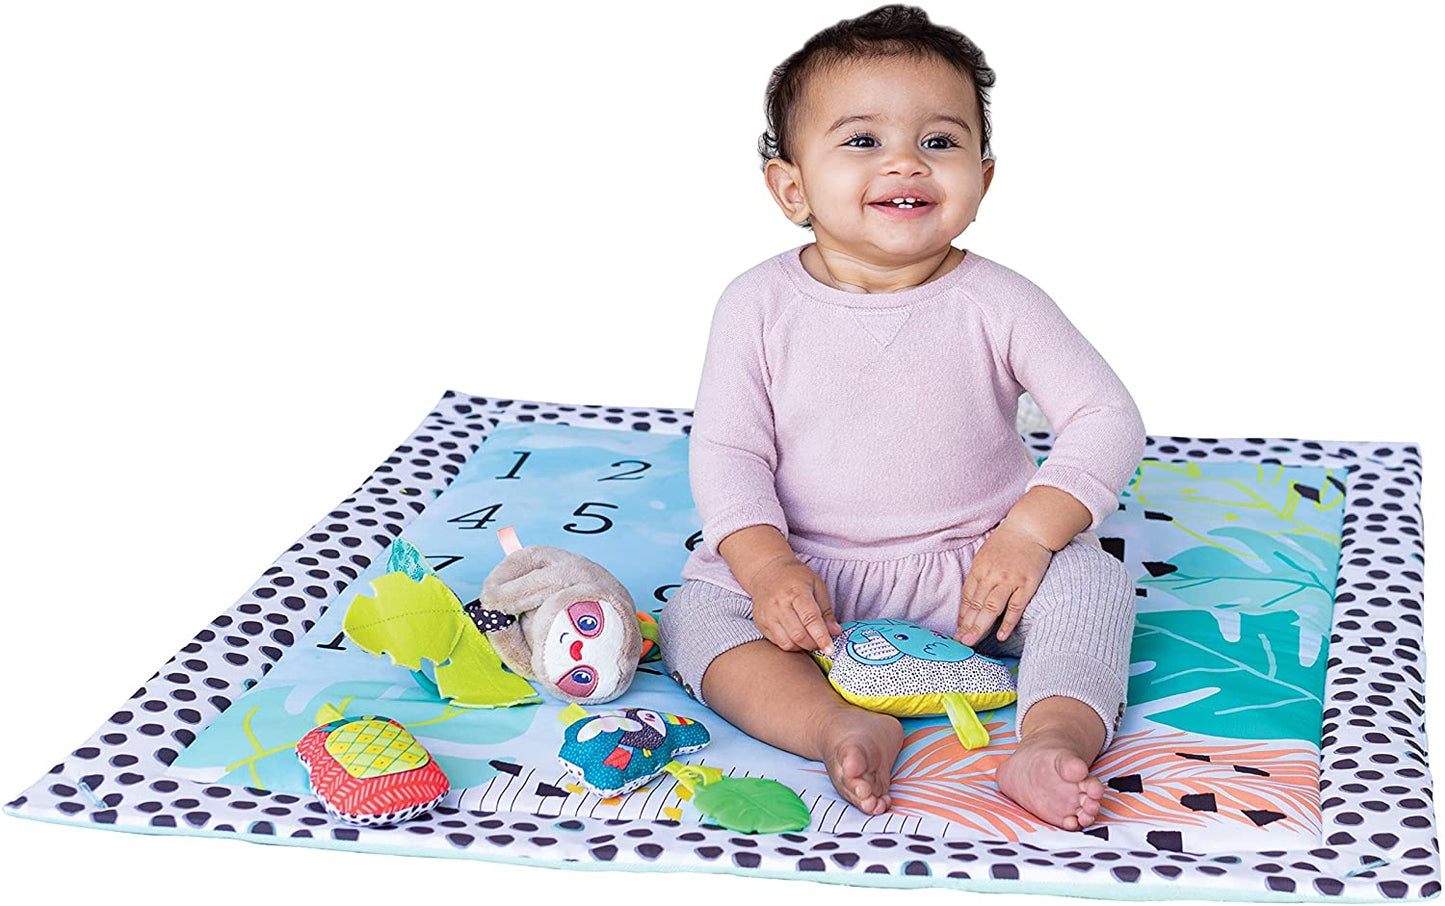 Infantino - Tapete de brincar dobrável 4 em 1 estimulante, com 4 modos e 4 brinquedos sensoriais adicionais